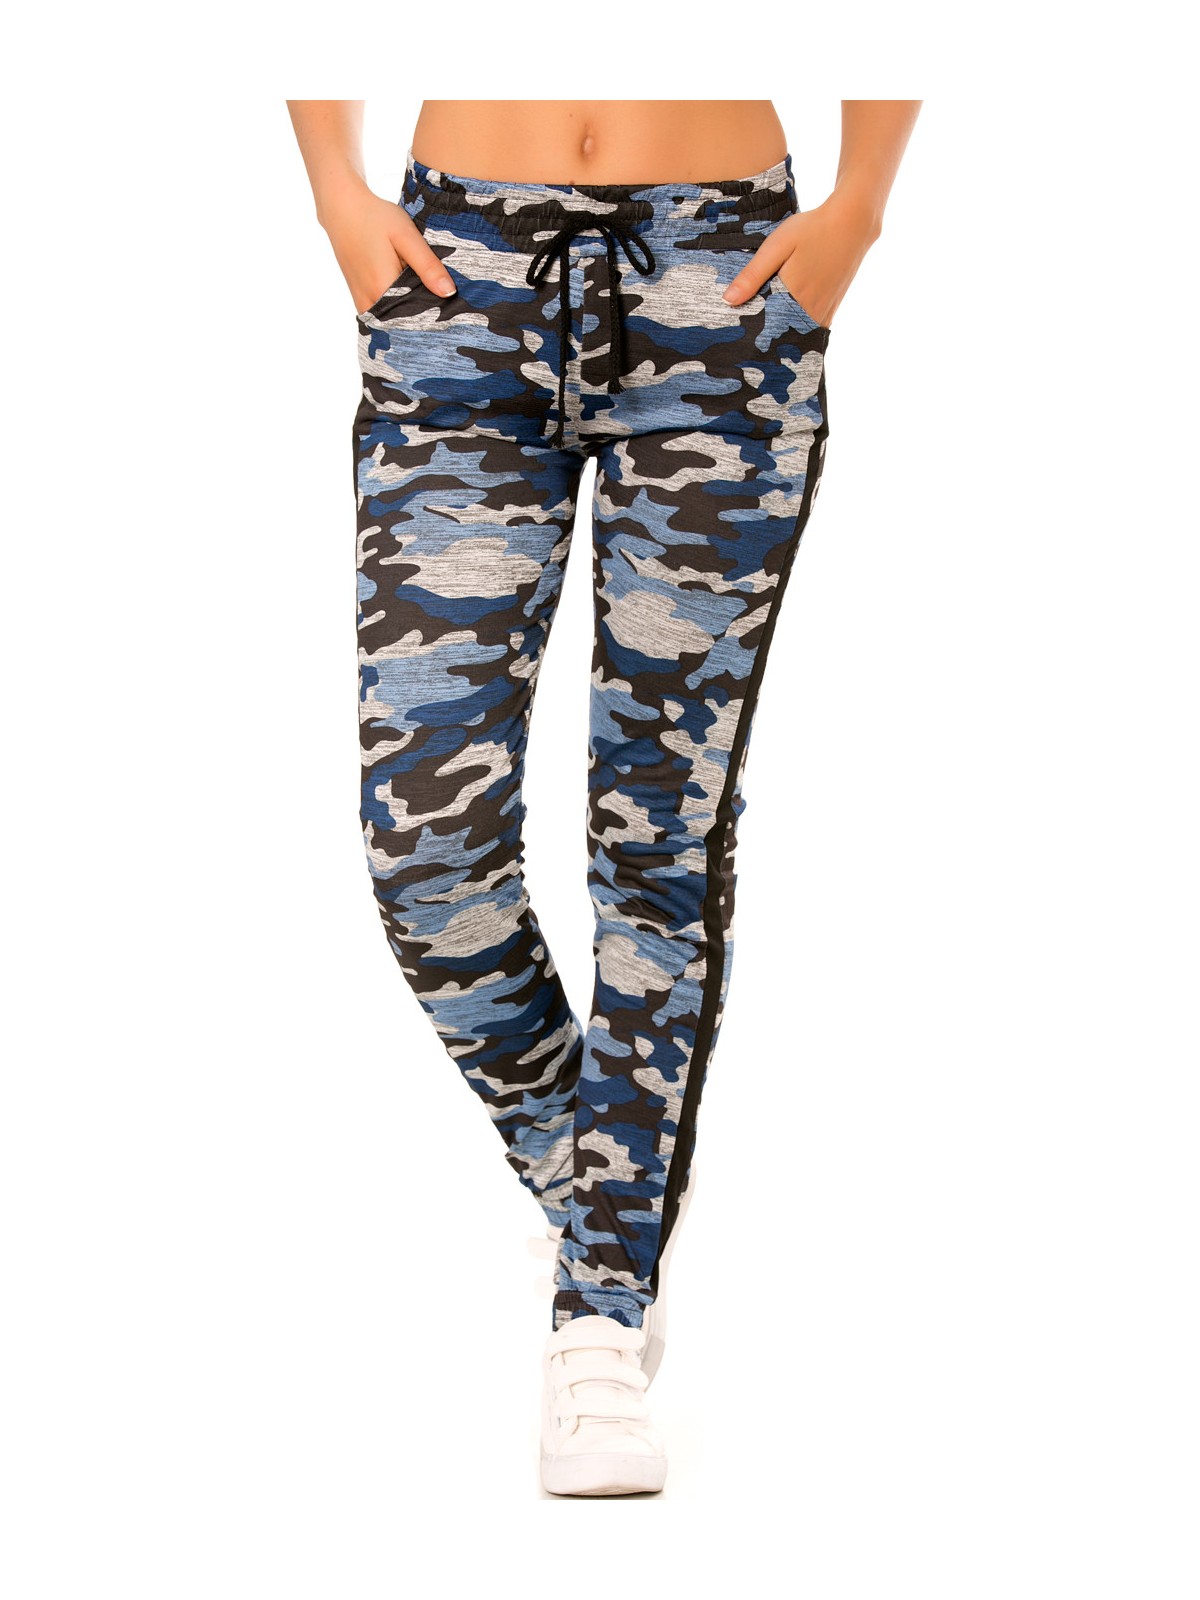 Pantalon jogging militaire bleu avec poches et bandes noires. Enleg 9-104A. - 1